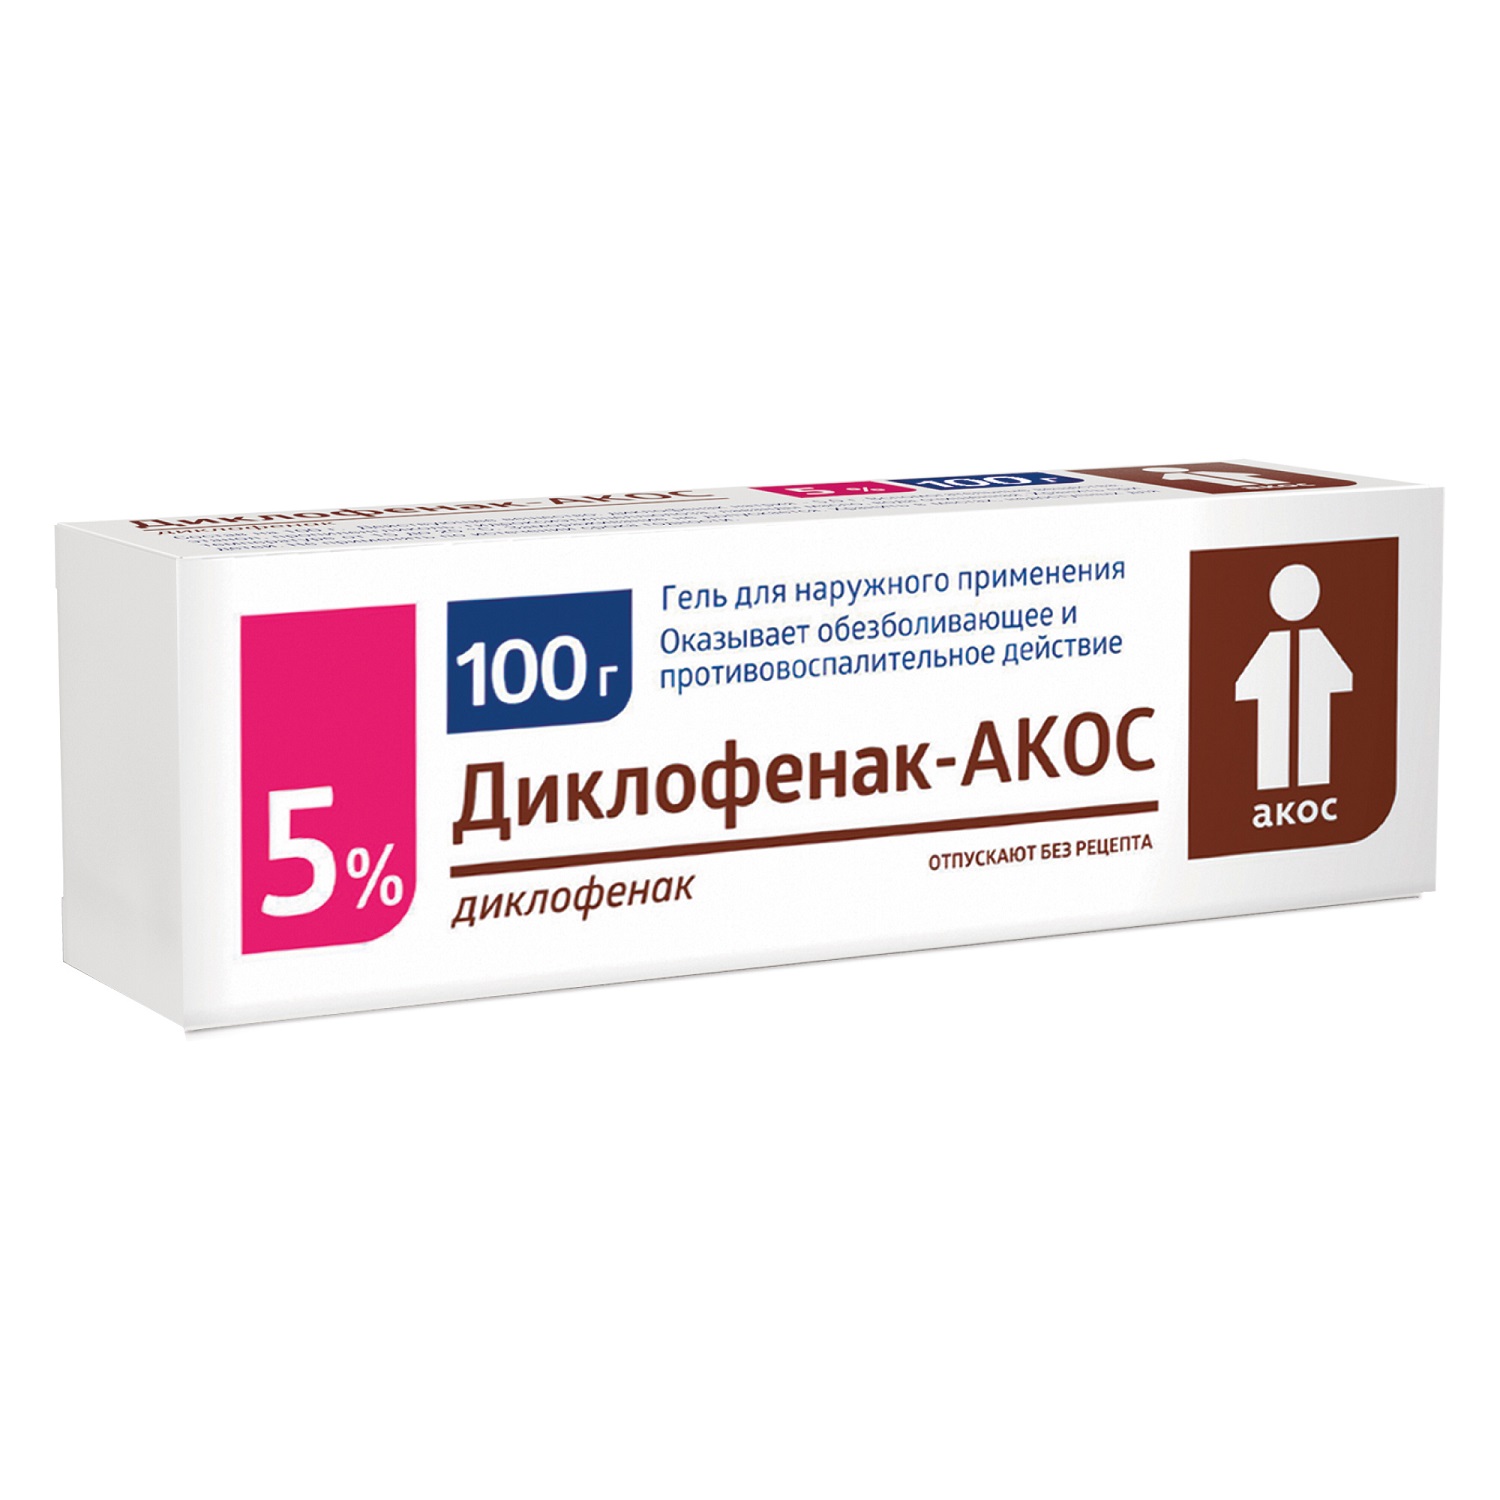 Диклофенак-Акос гель 5% 100г кетопрофен акос гель для наружн прим 5% 100г